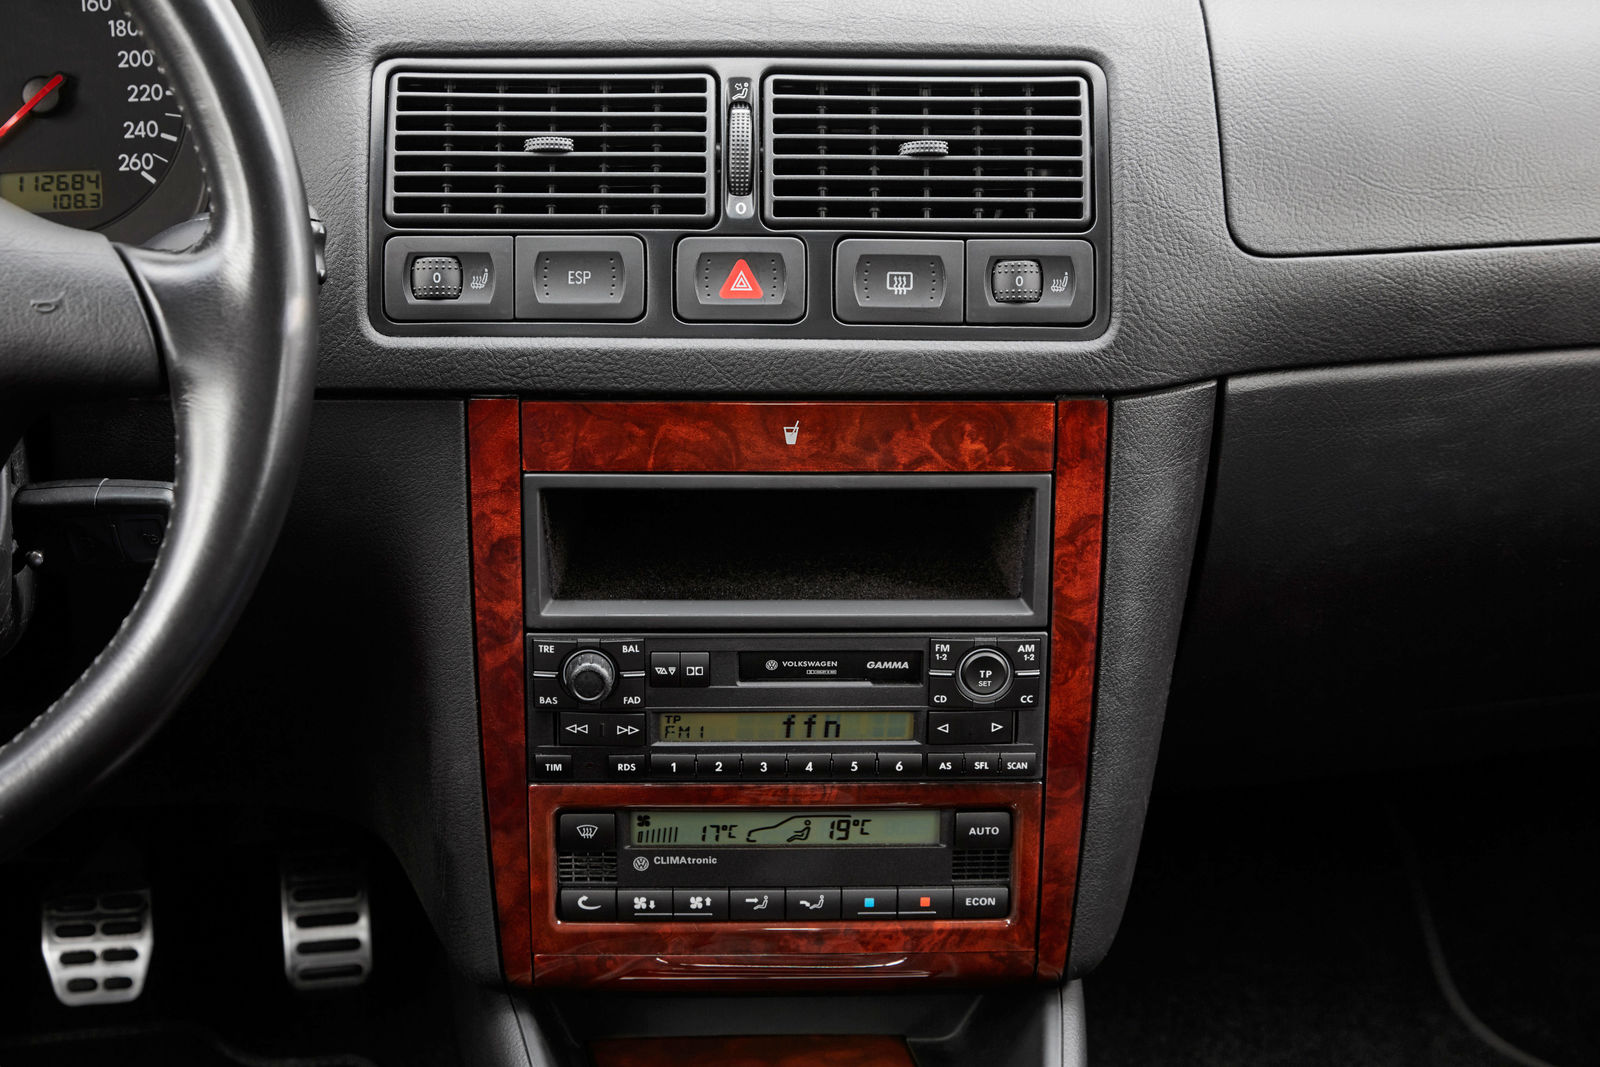 Bluetooth im Radio Delta nachrüsten Rot / Das doppel Golf IV